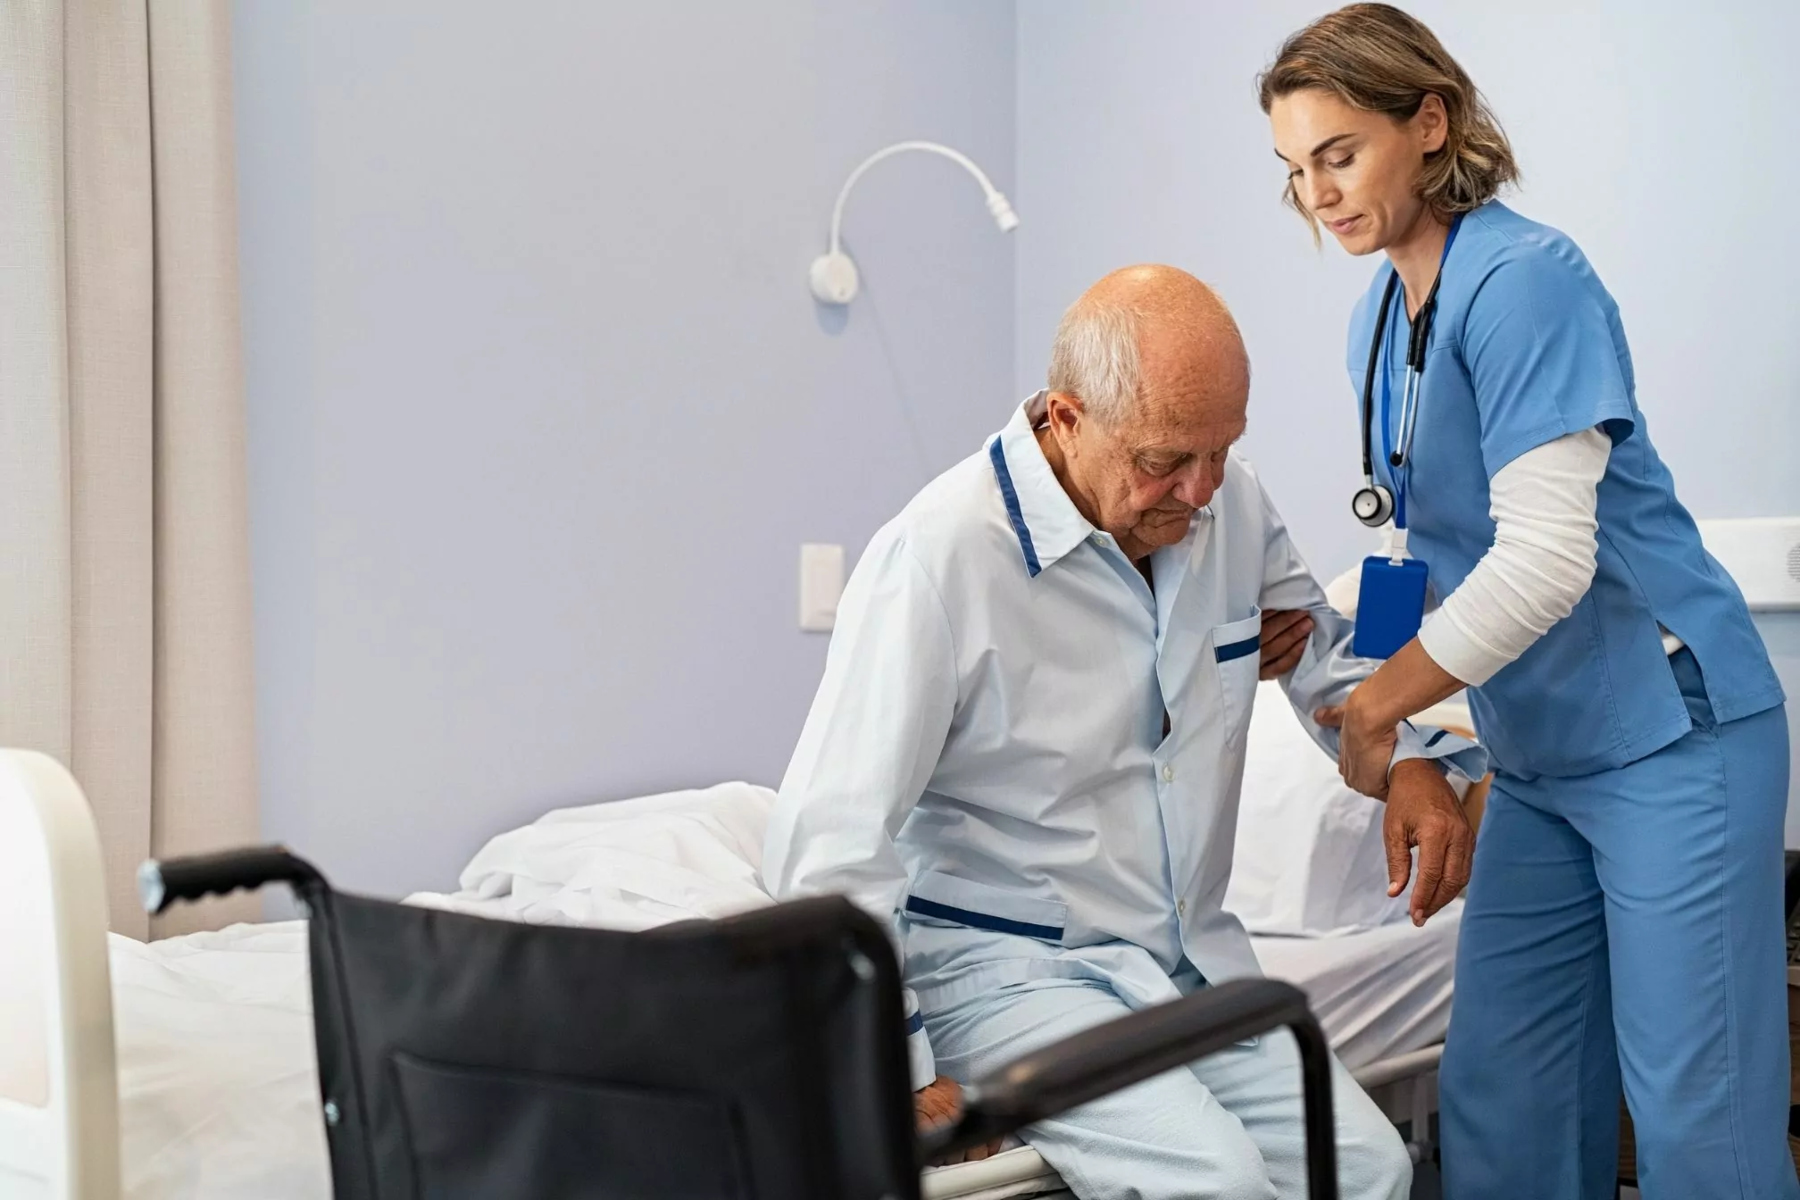 Ασθενείς: Ορισμένοι ξενώνες ηλικιωμένων δεν παρέχουν αξιοπρεπή φροντίδα στα άτομα 3ης ηλικίας